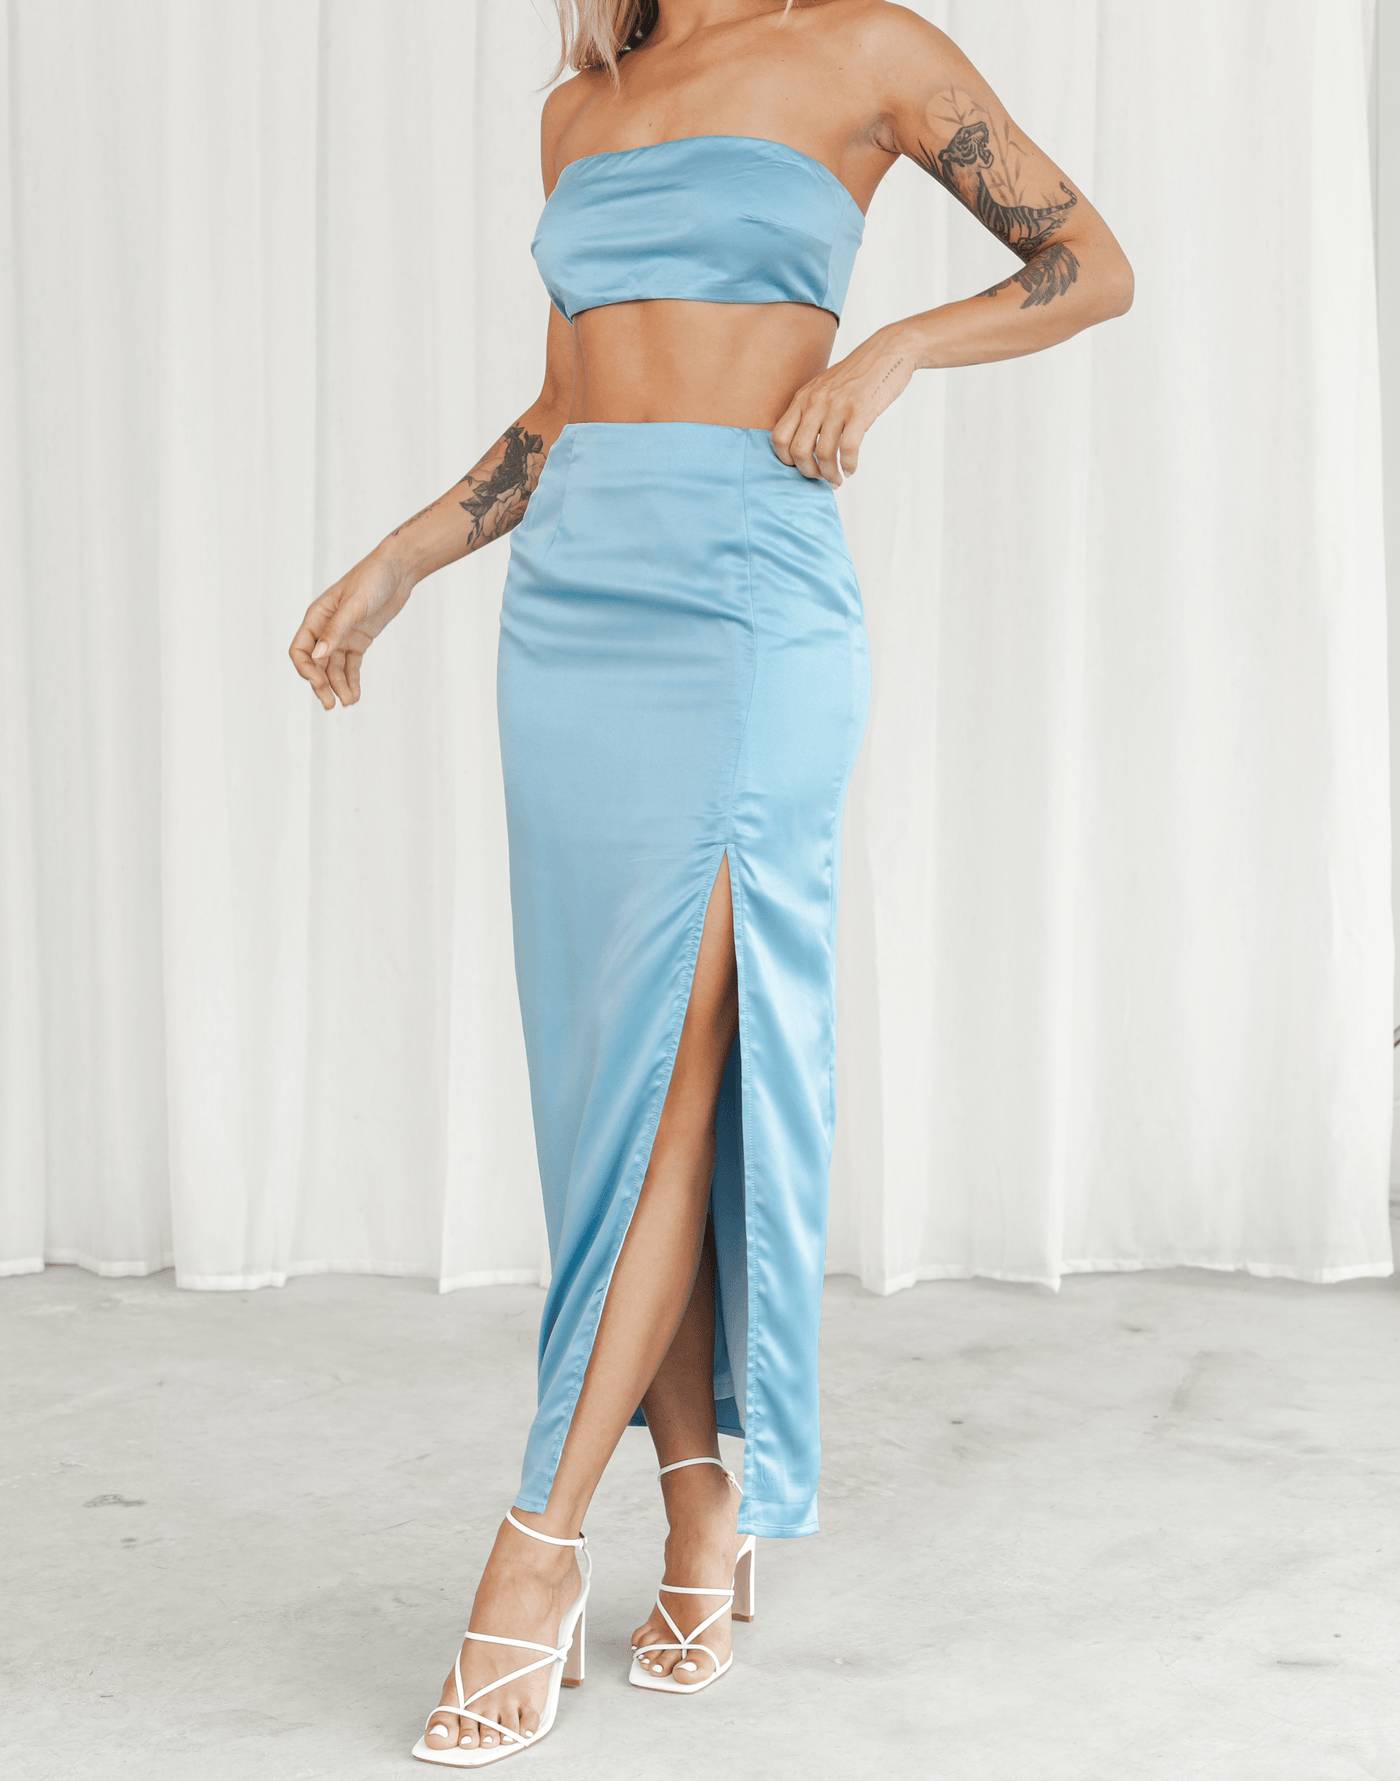 Da Vinci Midi Skirt (Blue) - Silky Midi Skirt with Side Split - Women's Skirt - Charcoal Clothing